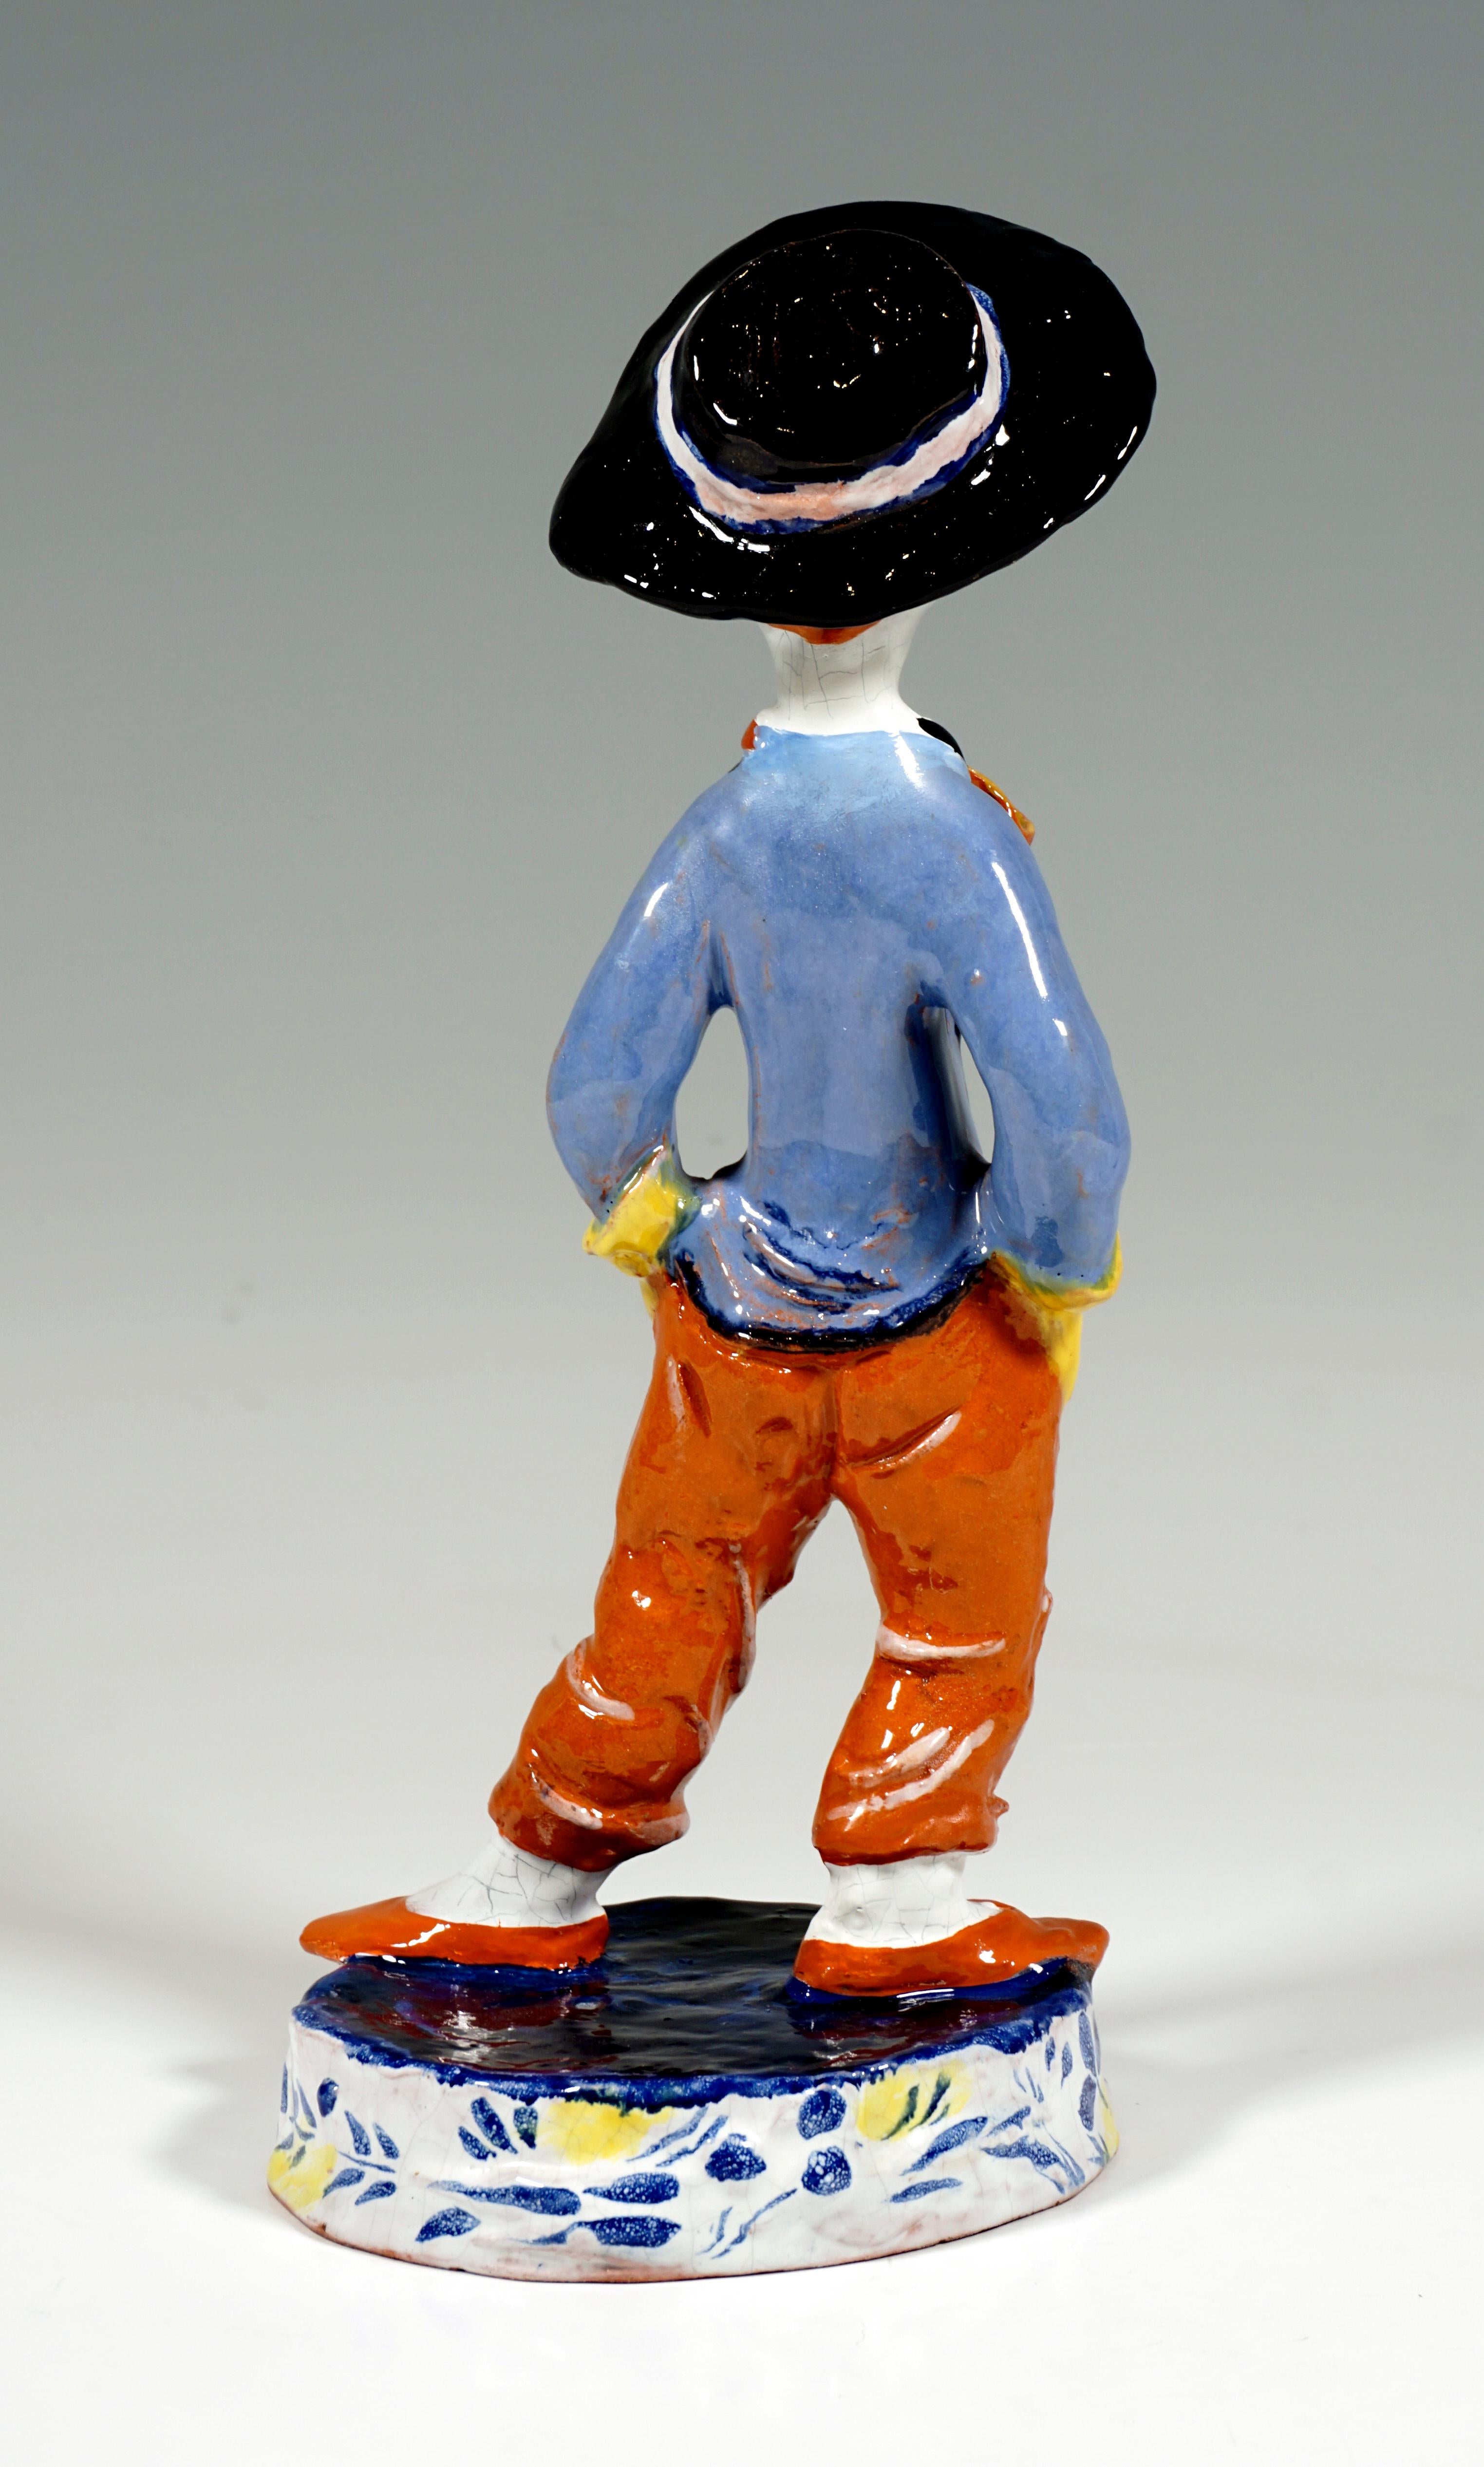 Expressionist Wiener Werkstaette Expressive Ceramic Figure 'Street Boy', by Susi Singer, 1923